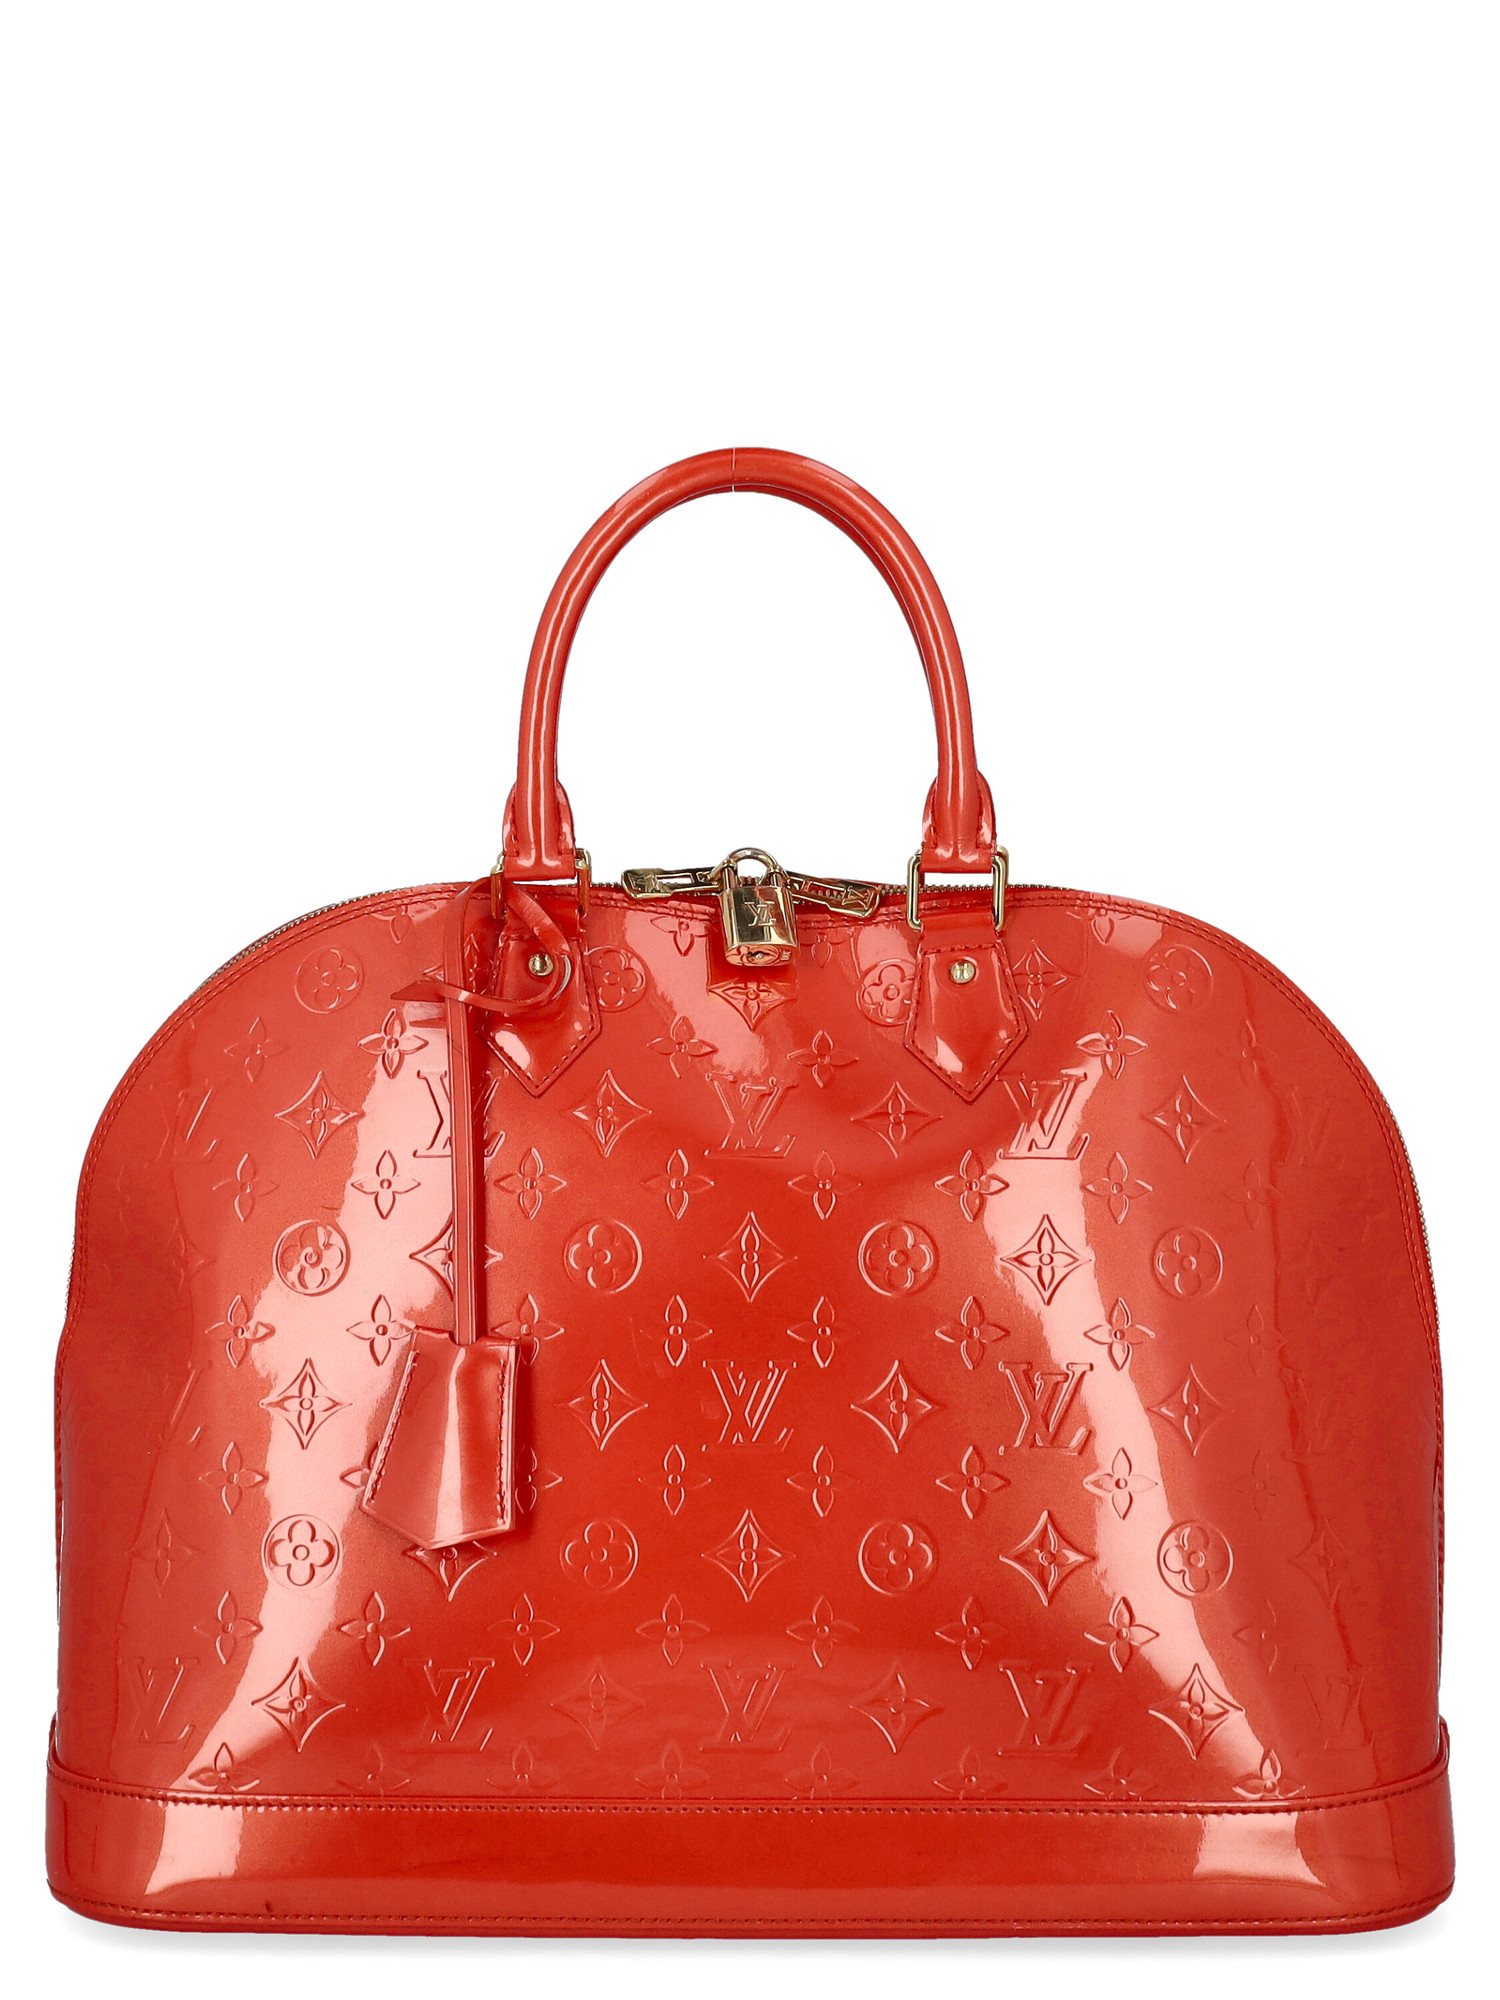 Sacs À Main Pour Femme - Louis Vuitton - En Leather Red - Taille:  -